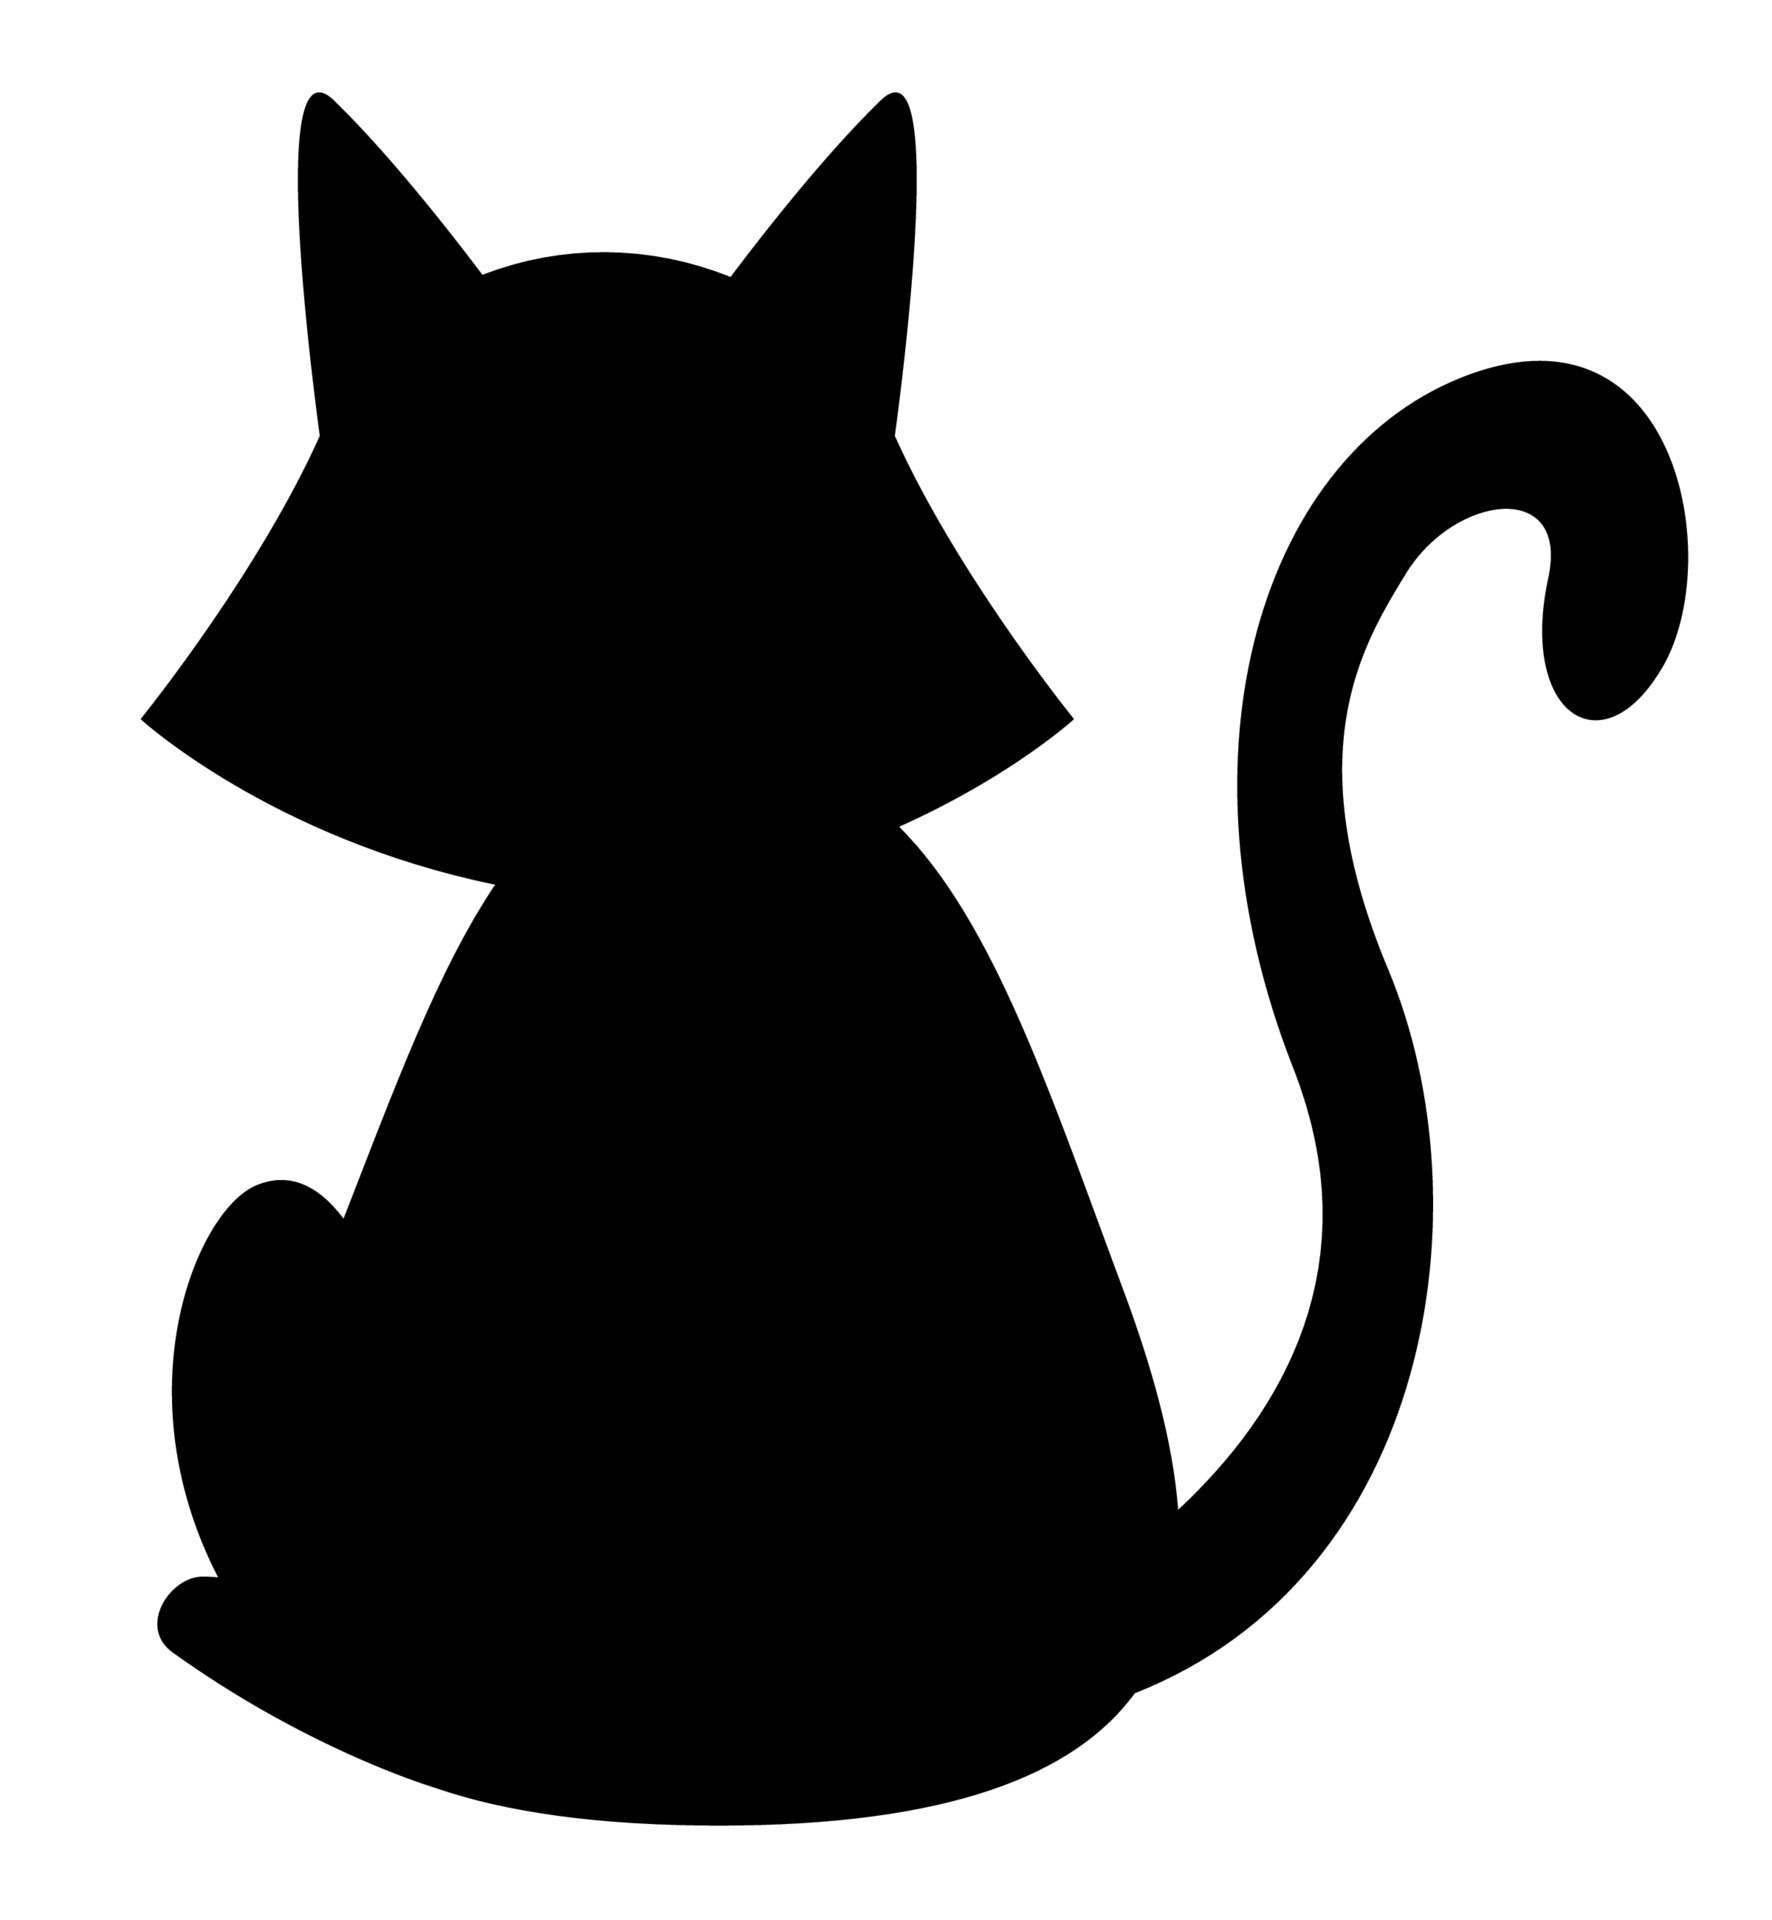 ilustração de gato preto. ilustração de gato preto adorável preto liso,  isolado no fundo branco. clipart de esboço de desenho de gatinho, para seus  projetos de design. 11319561 Vetor no Vecteezy